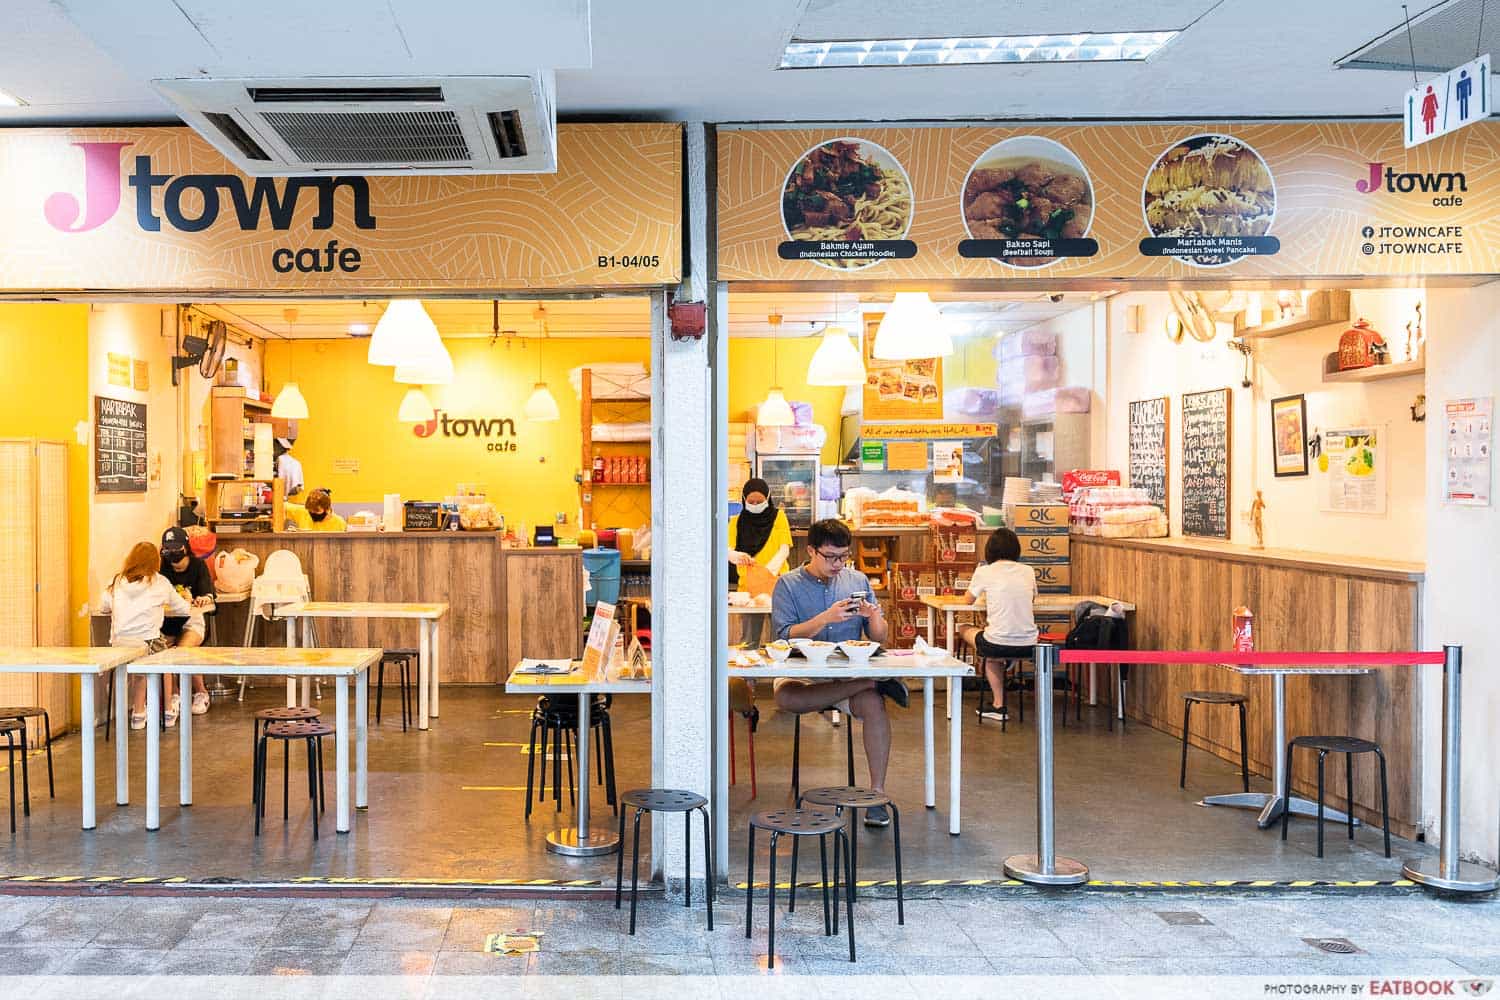 Jtown Cafe storefront